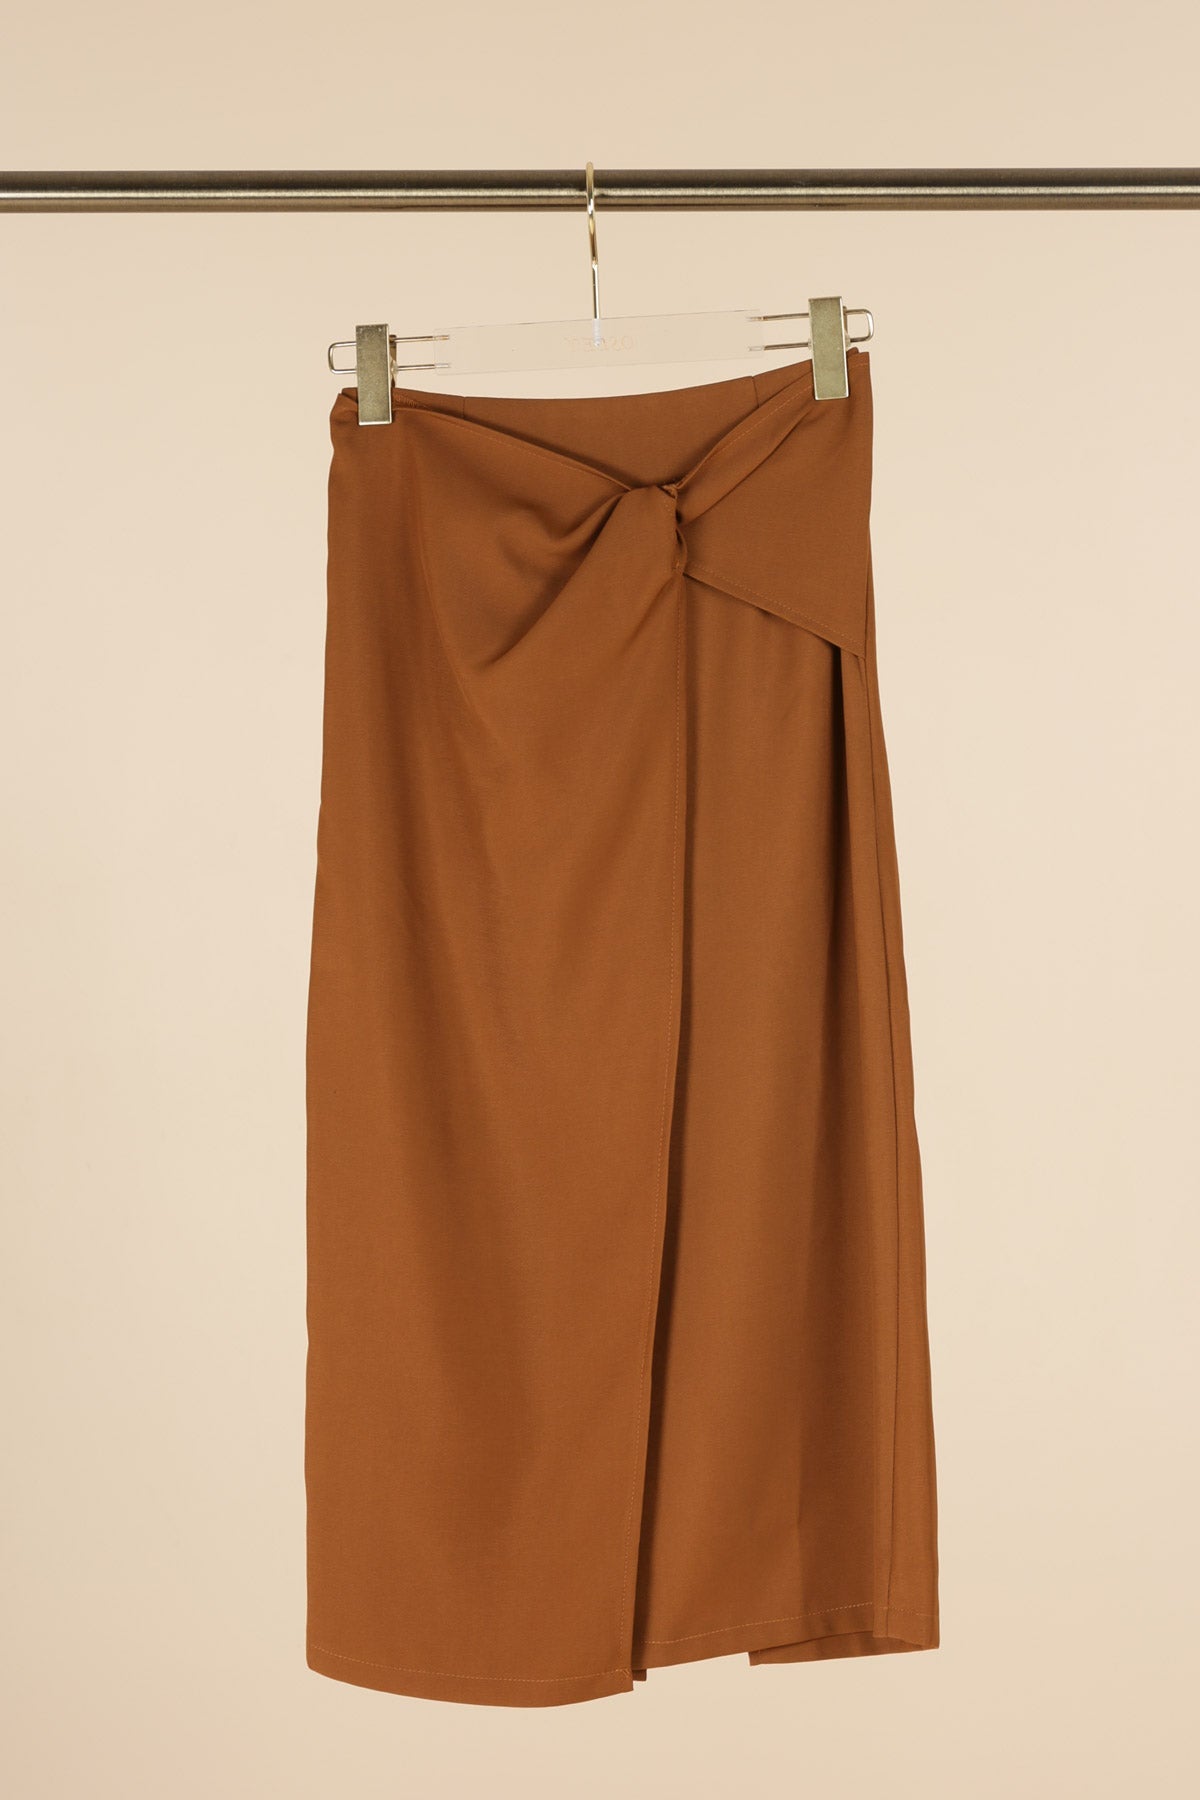 Brown Corner Tie Skirt - NIXII Clothing